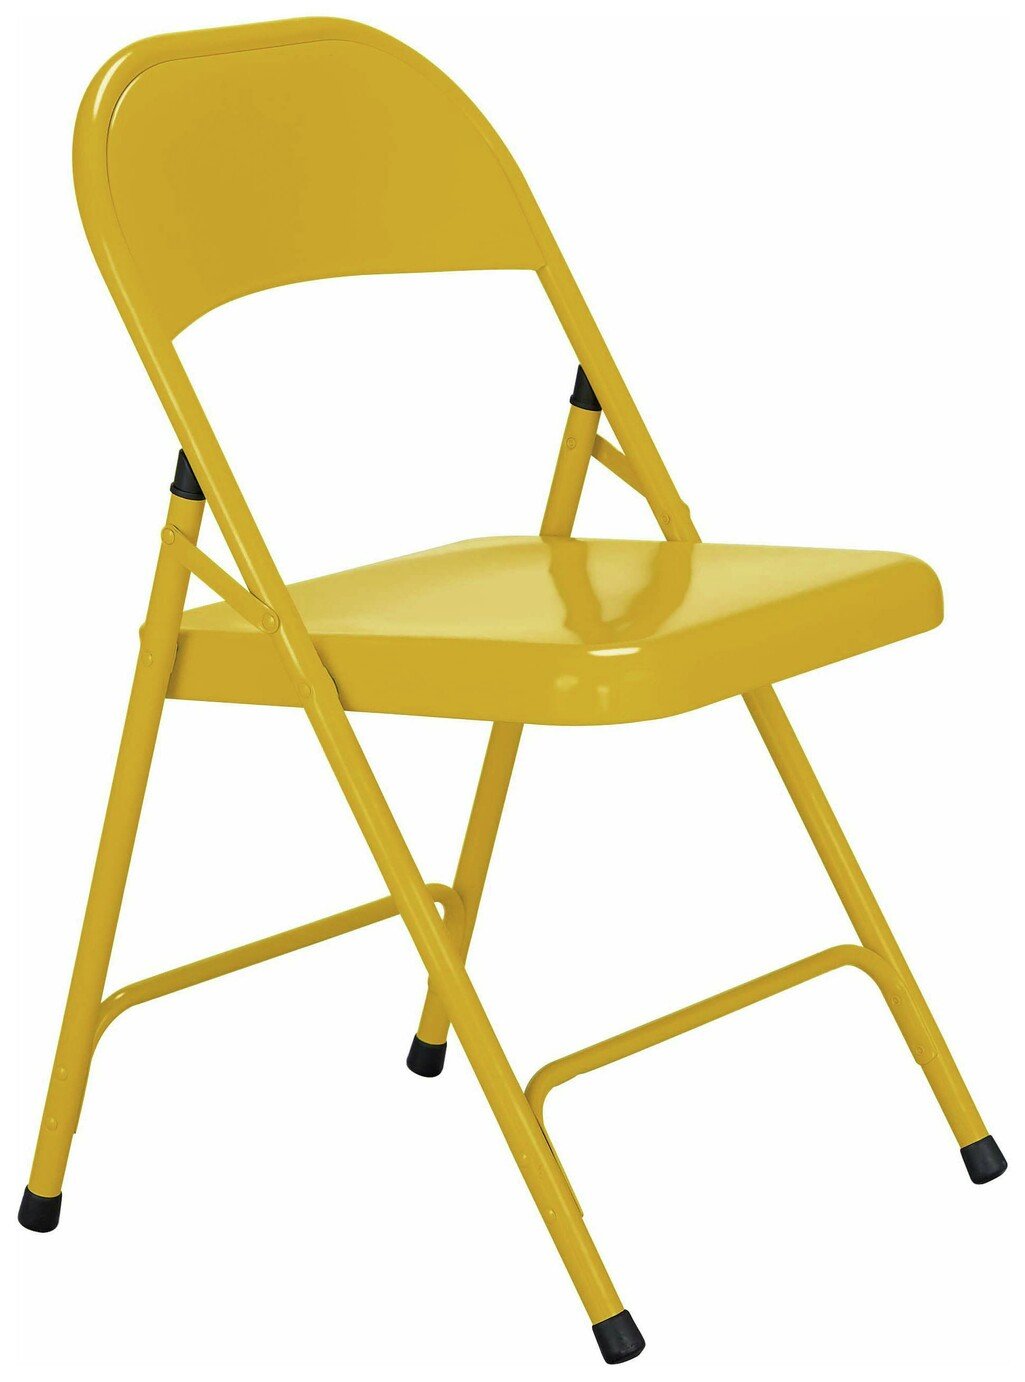 стул желтый с водой